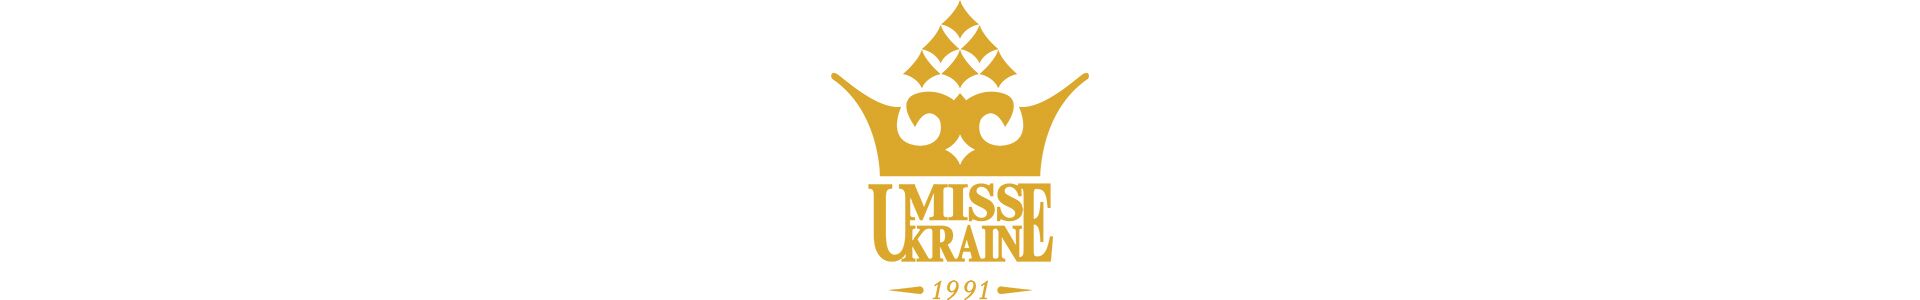 Фінал «Міс Україна 2016»